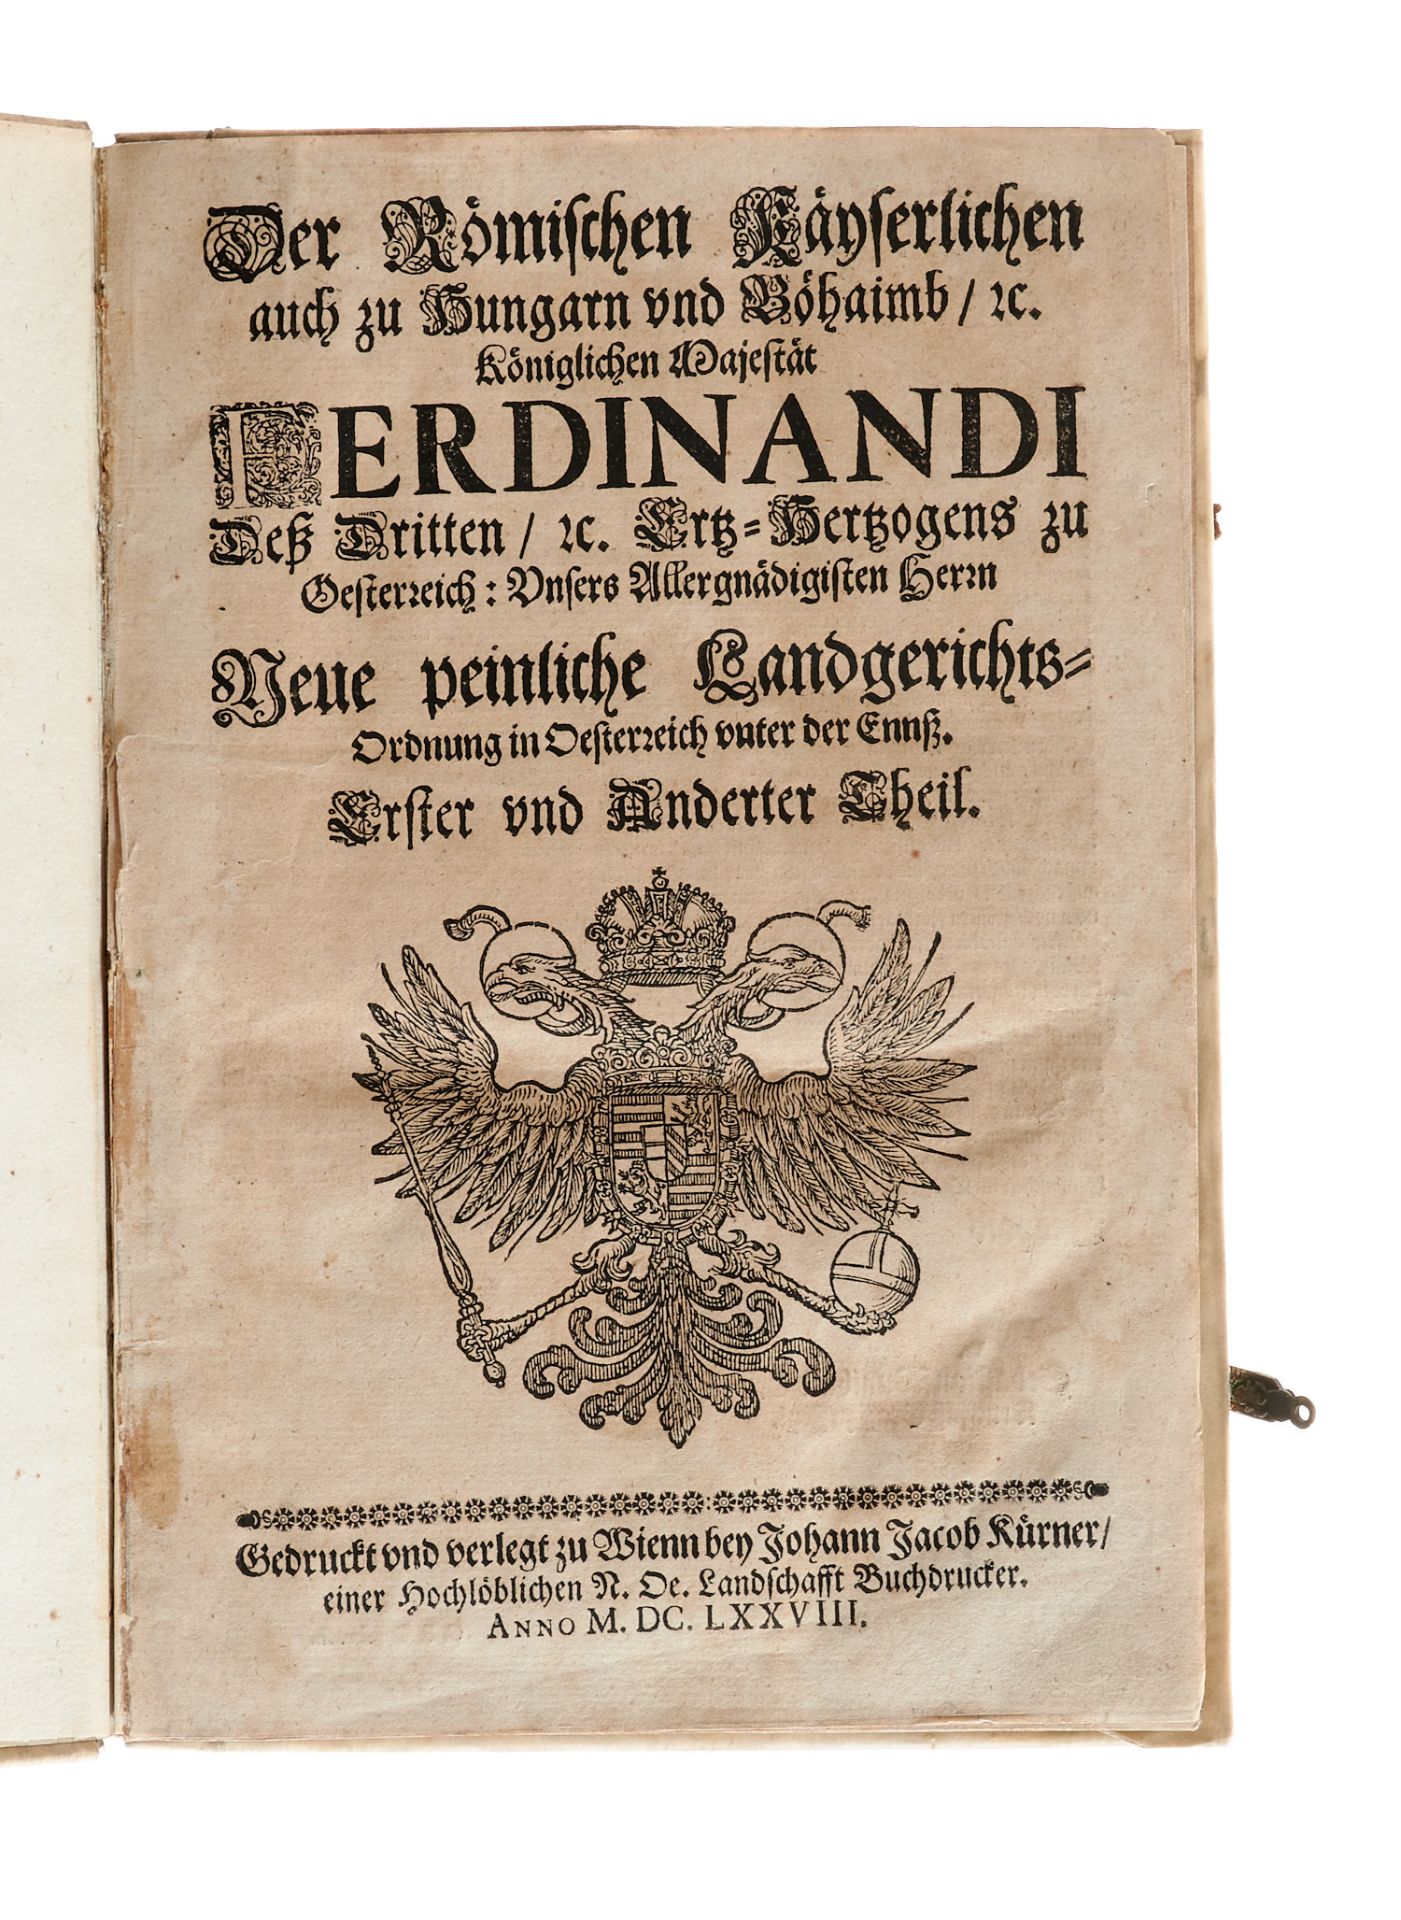 Recht Konvolut - 9 Werke in 9 Bdn. Ca. 1678-1808. Verschied. Formate. Verschied. Einbände, meist - Bild 2 aus 5